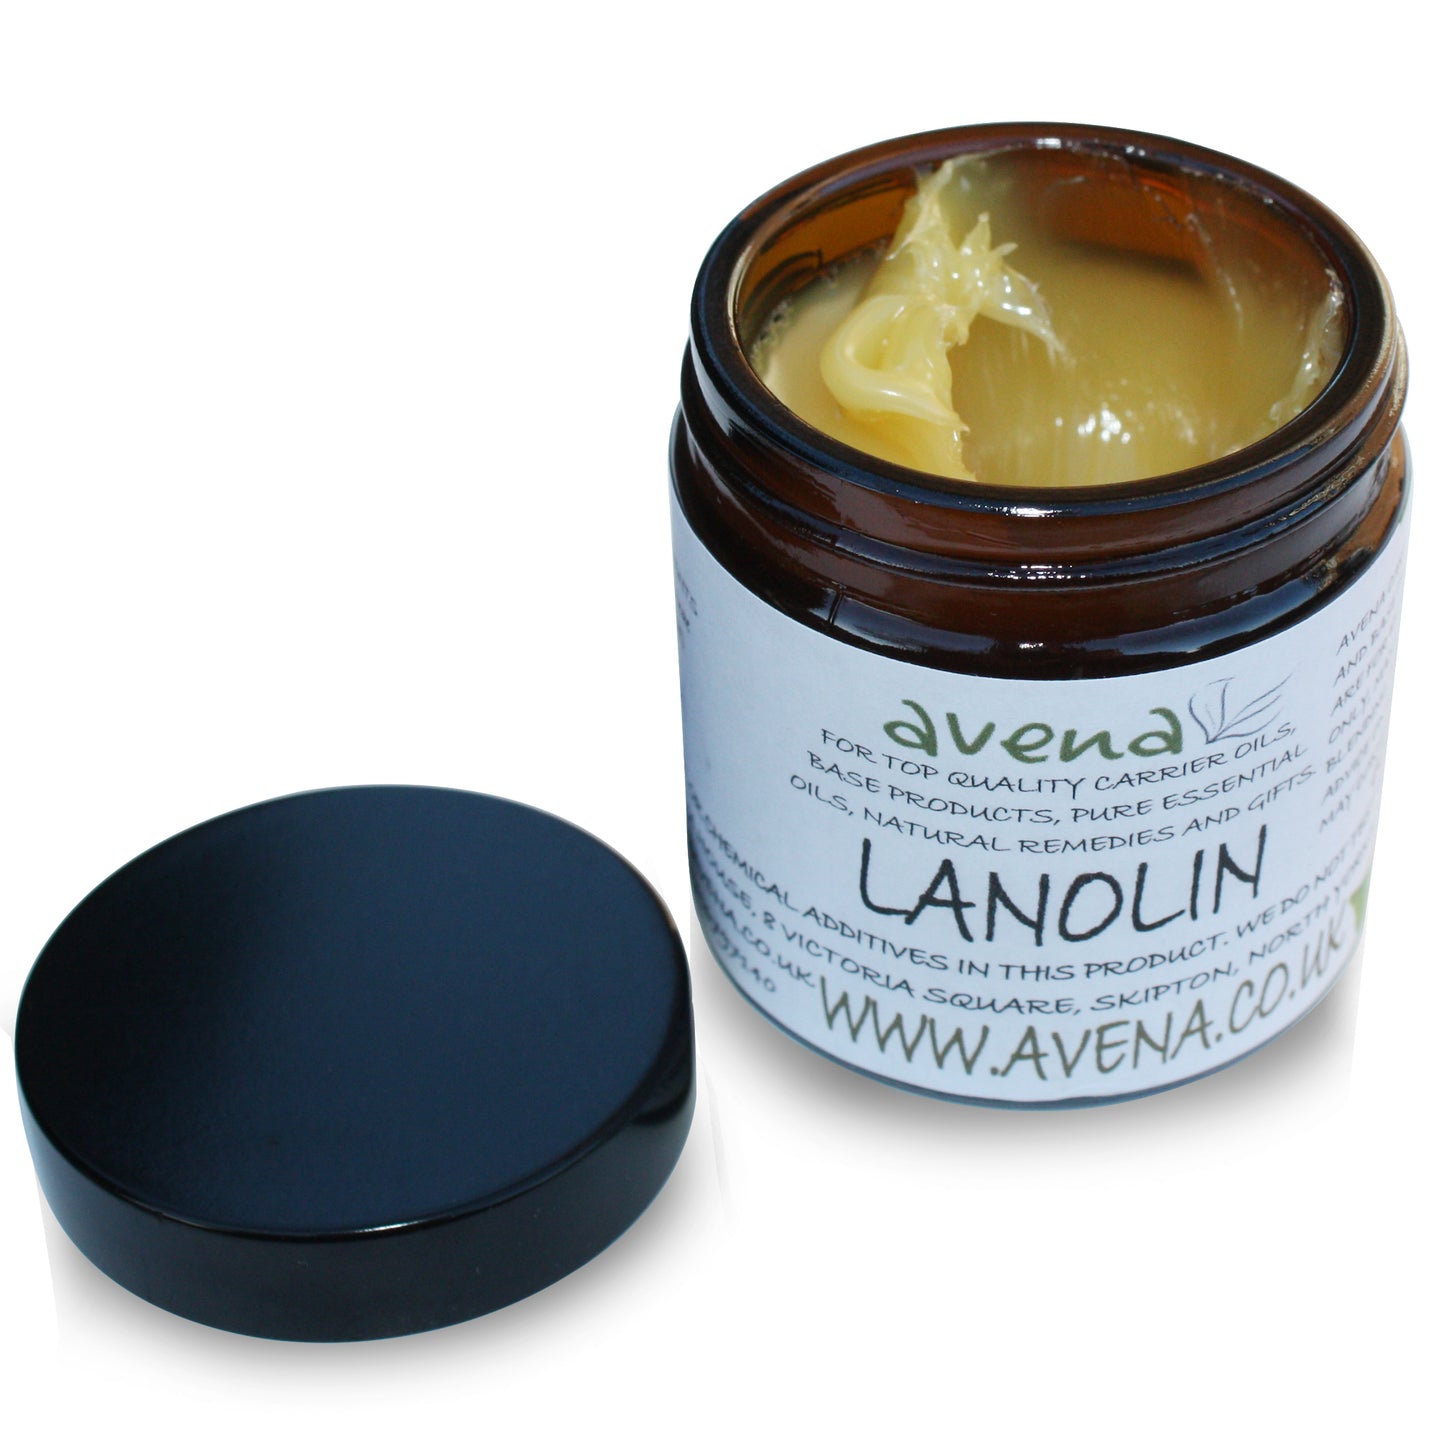 Lanolin Cream Natural - Premium Quality Lanolin Lip Balm Lanolin Nipple Cream